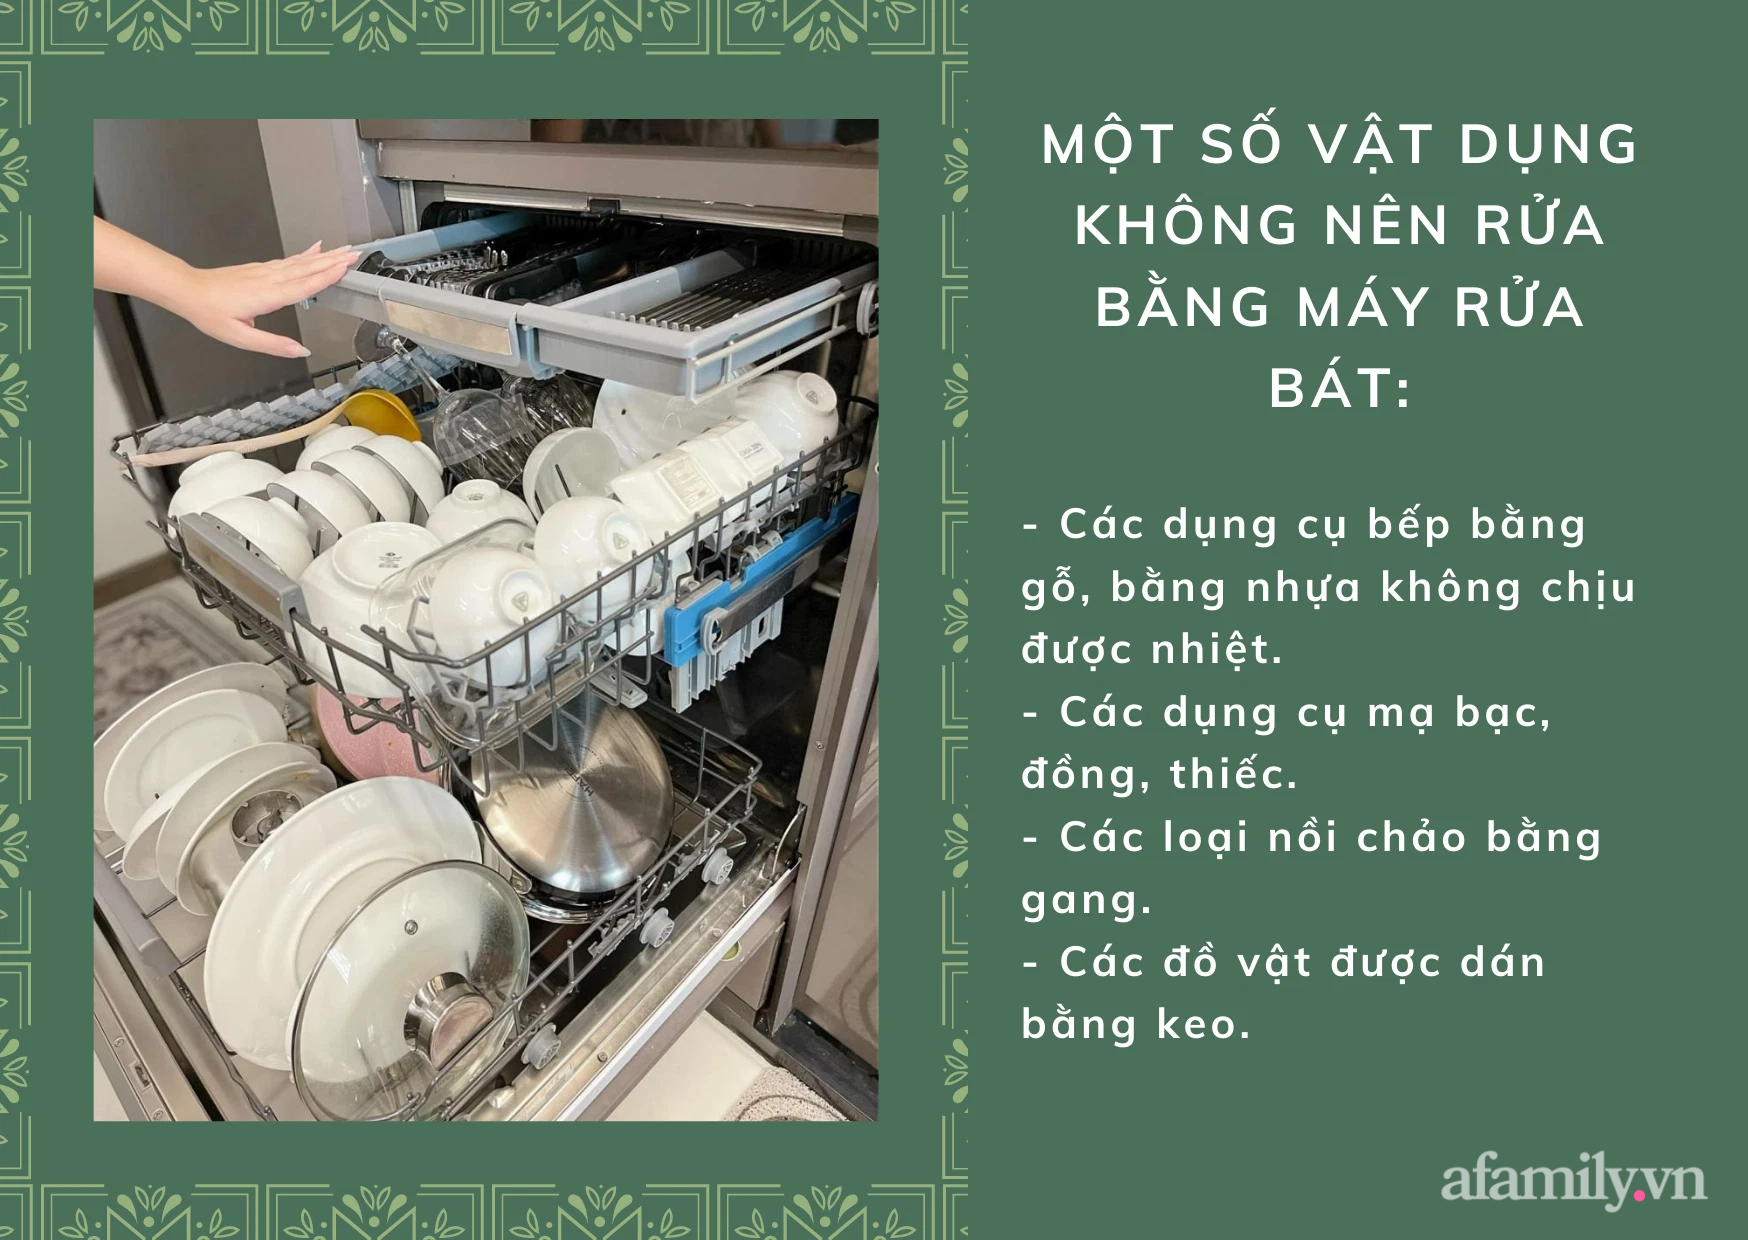 Đánh giá từ mẹ Sài Gòn sau 2 năm sử dụng sẽ thấy mua máy rửa bát thật đúng đắn, còn có bí kíp giữ tuổi thọ cực đỉnh - Ảnh 7.